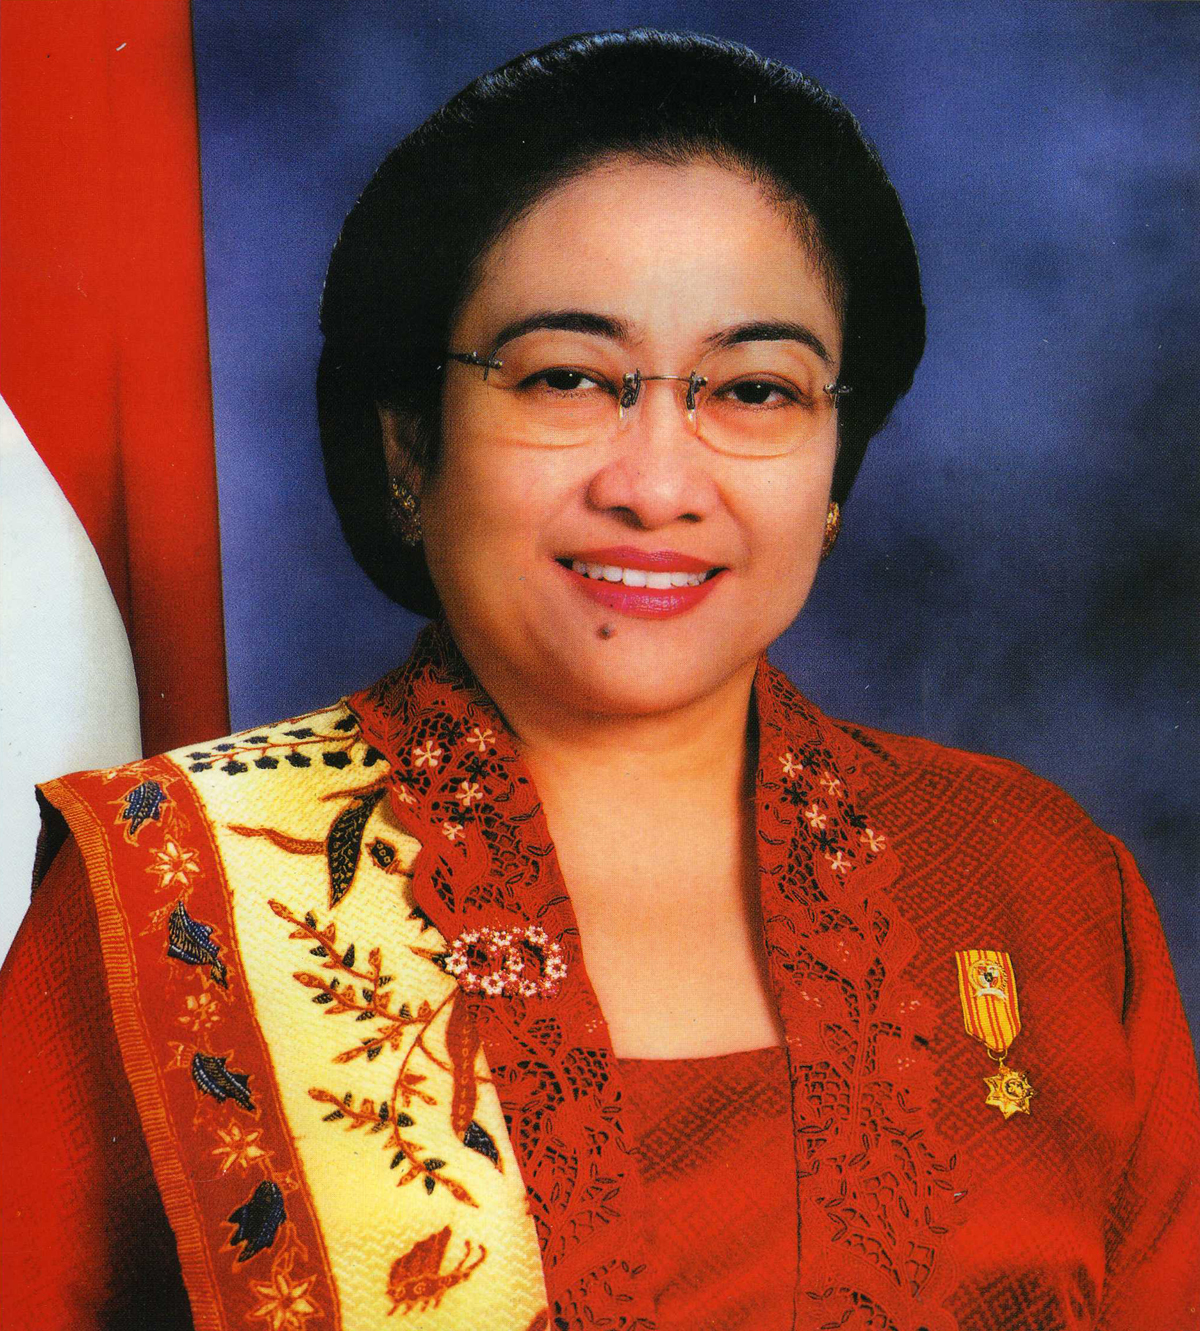 Andai SBY dan Megawati Bertarung Lagi di Pilpres, Kalian Dukung Siapa?